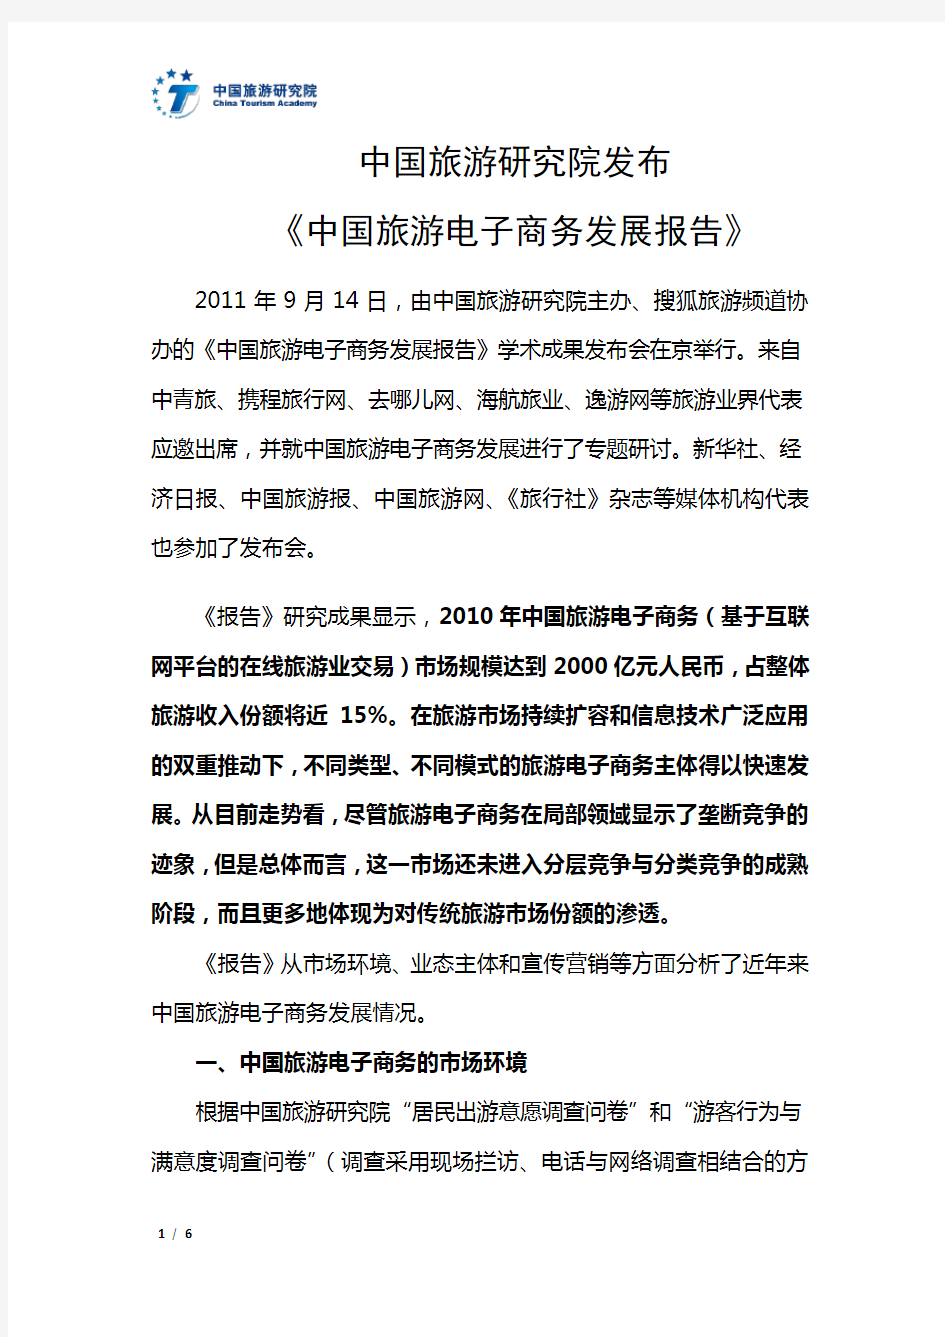 《中国旅游电子商务发展报告》(2011简版)